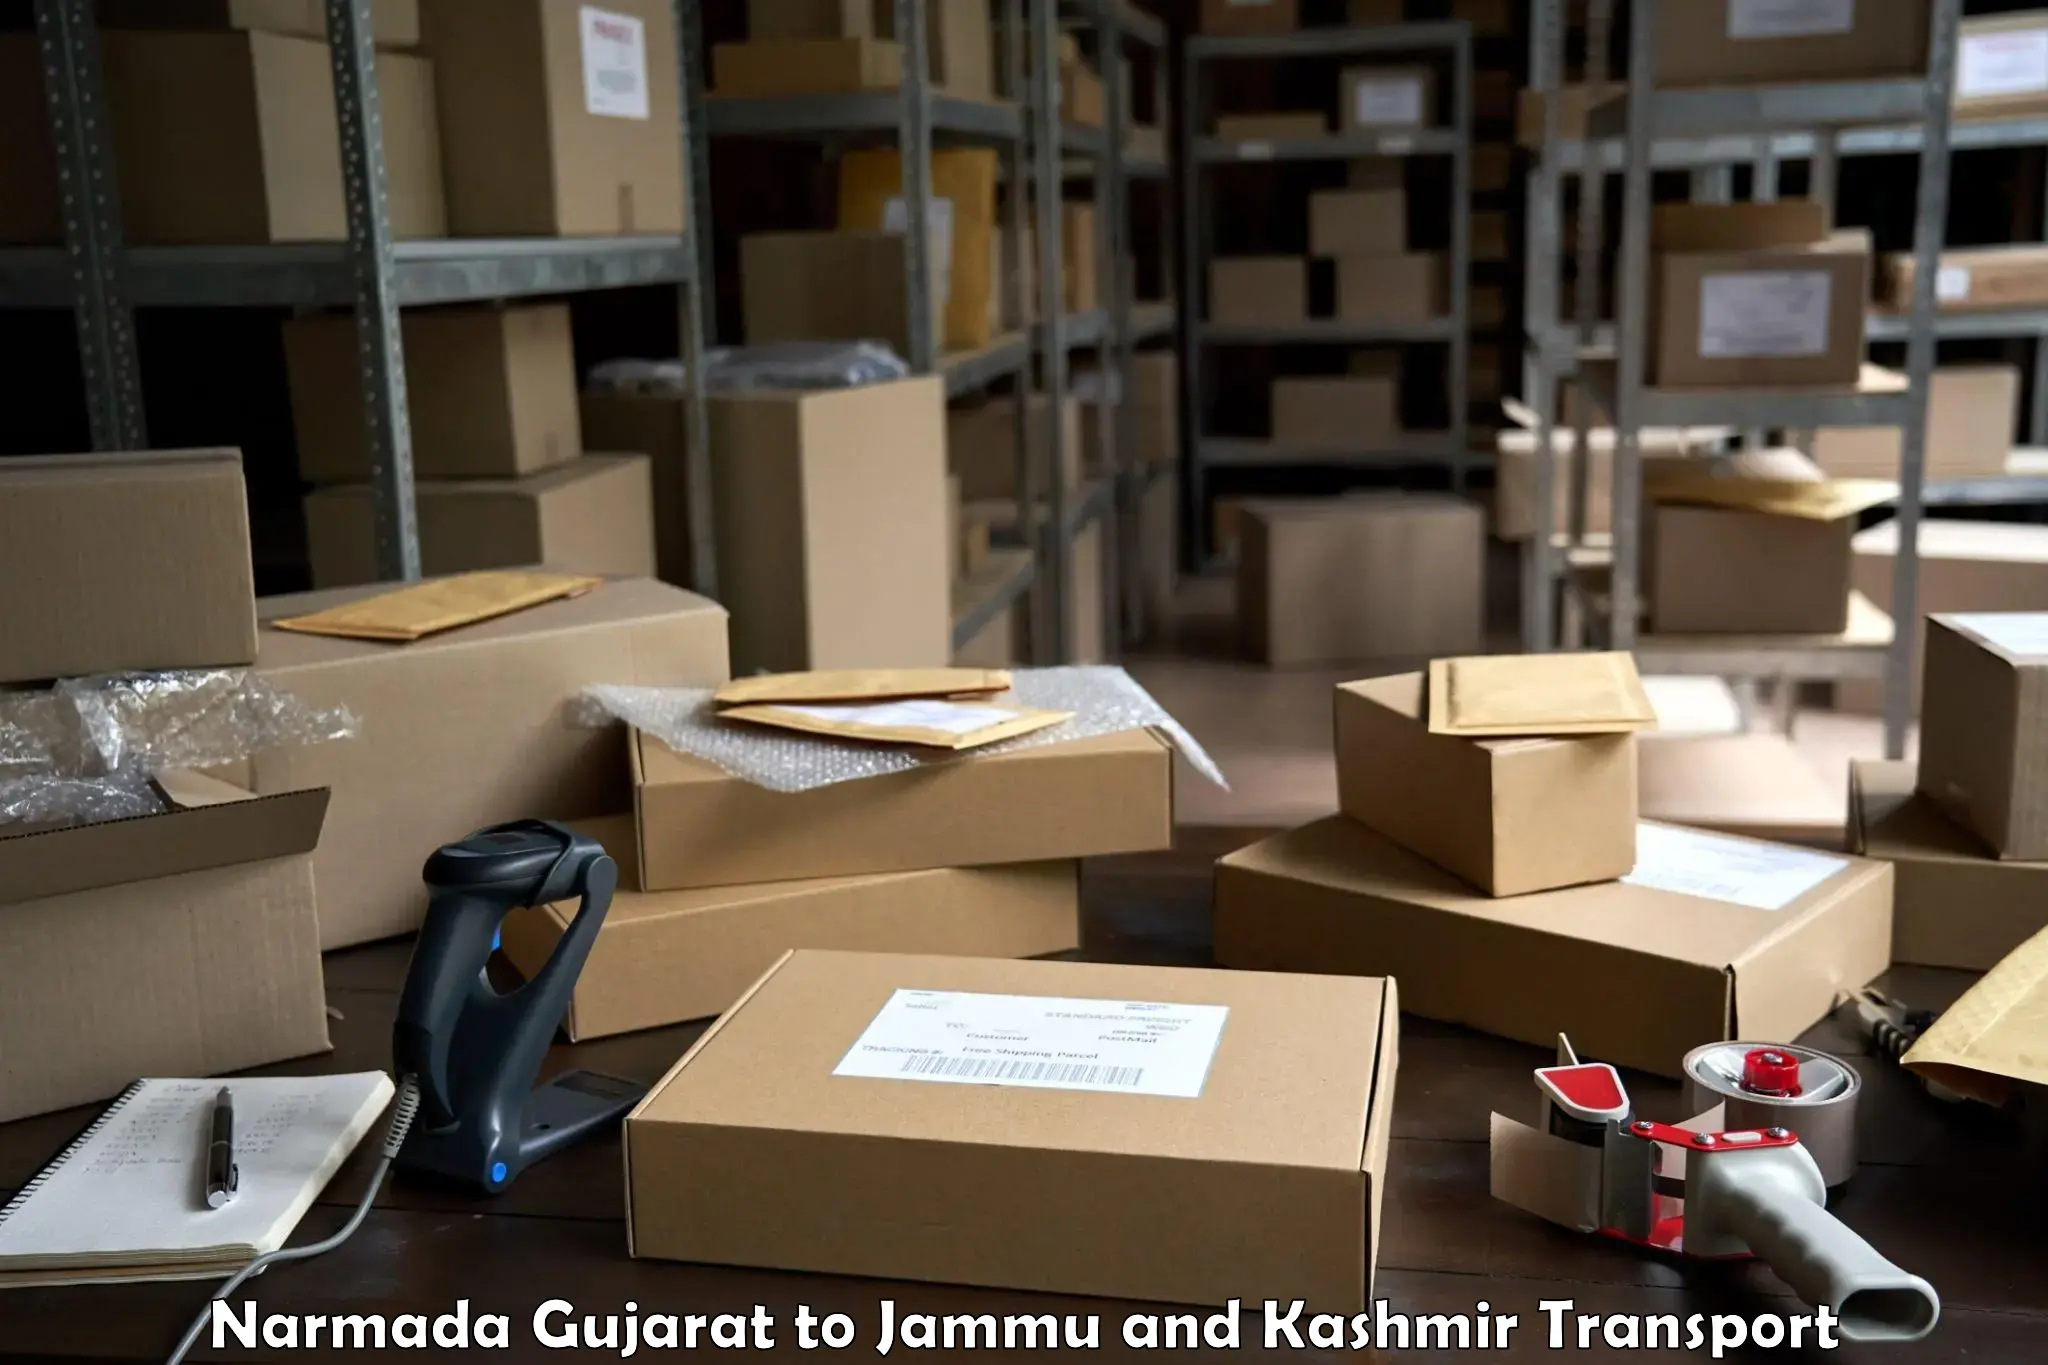 Shipping partner Narmada Gujarat to Anantnag